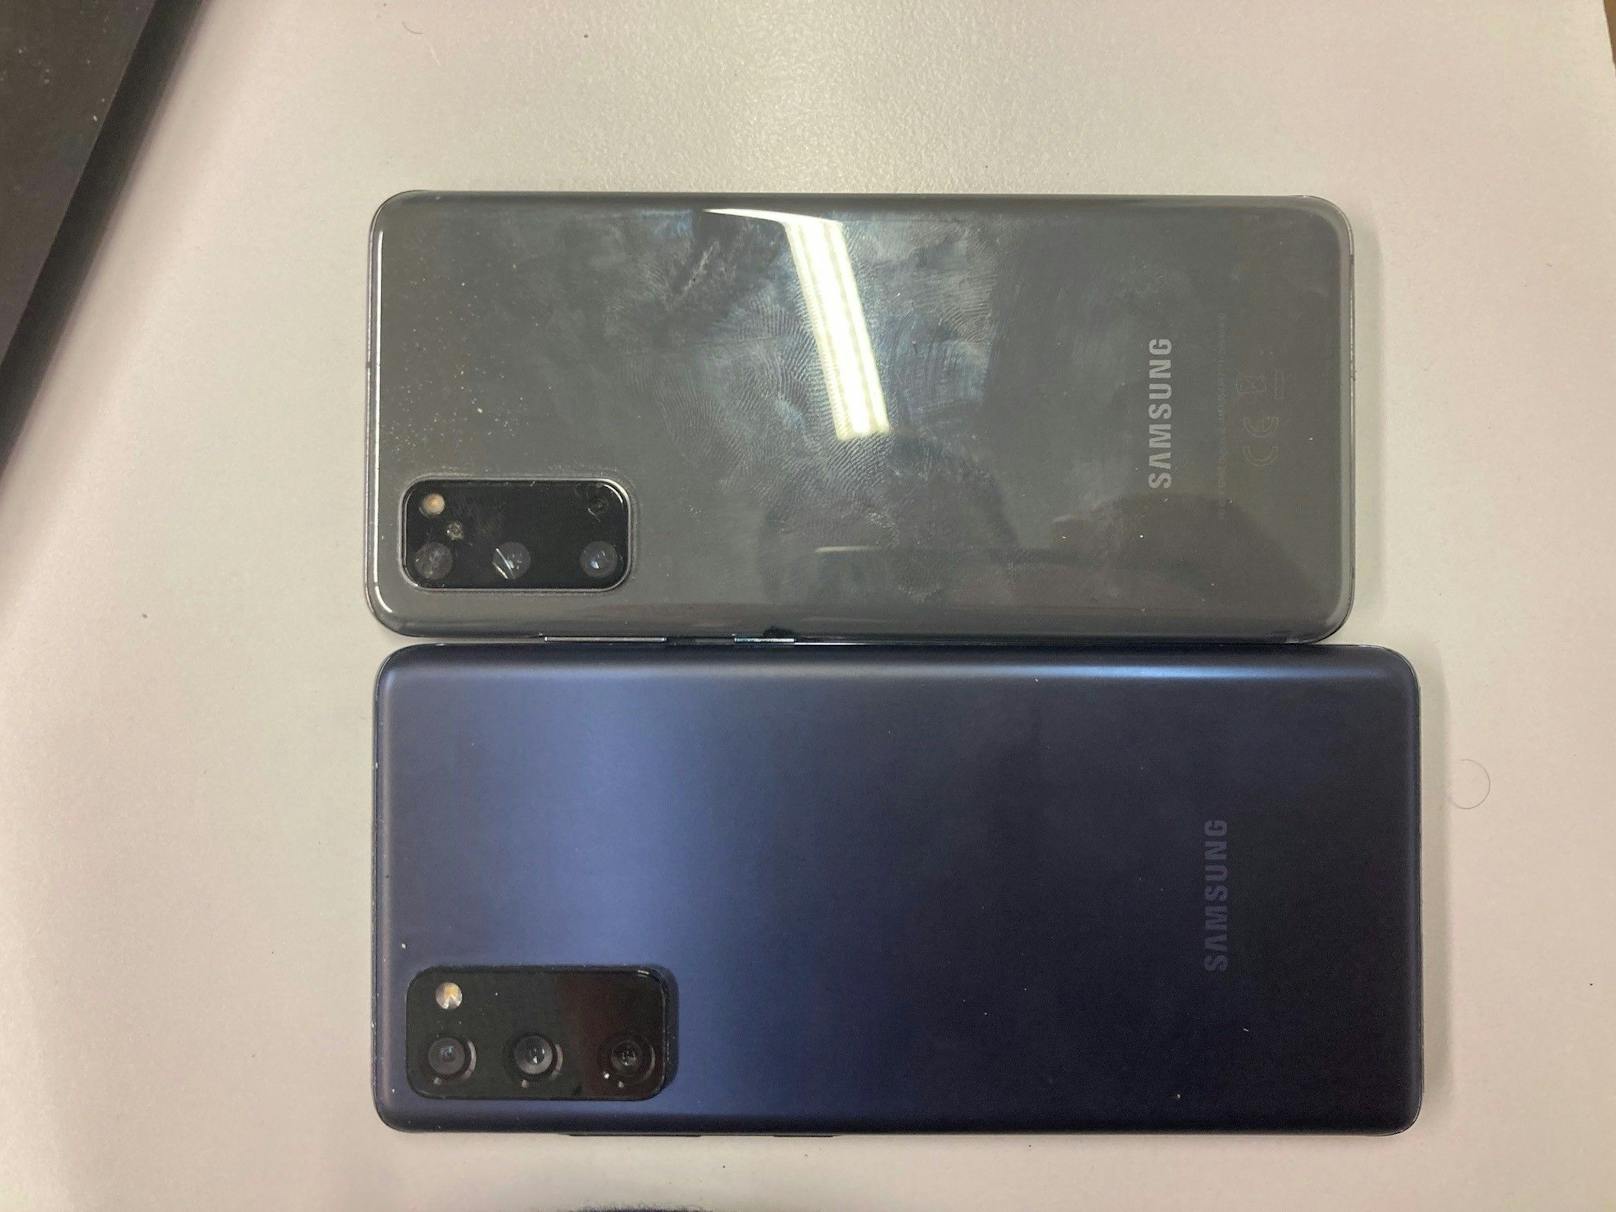 Samsung Galaxy S20 FE (SM-G780G), ohne SIM-Karte, Farbe dunkelblau mit schwarzer Hülle - wurde auf Werkseinstellungen zurückgesetzt